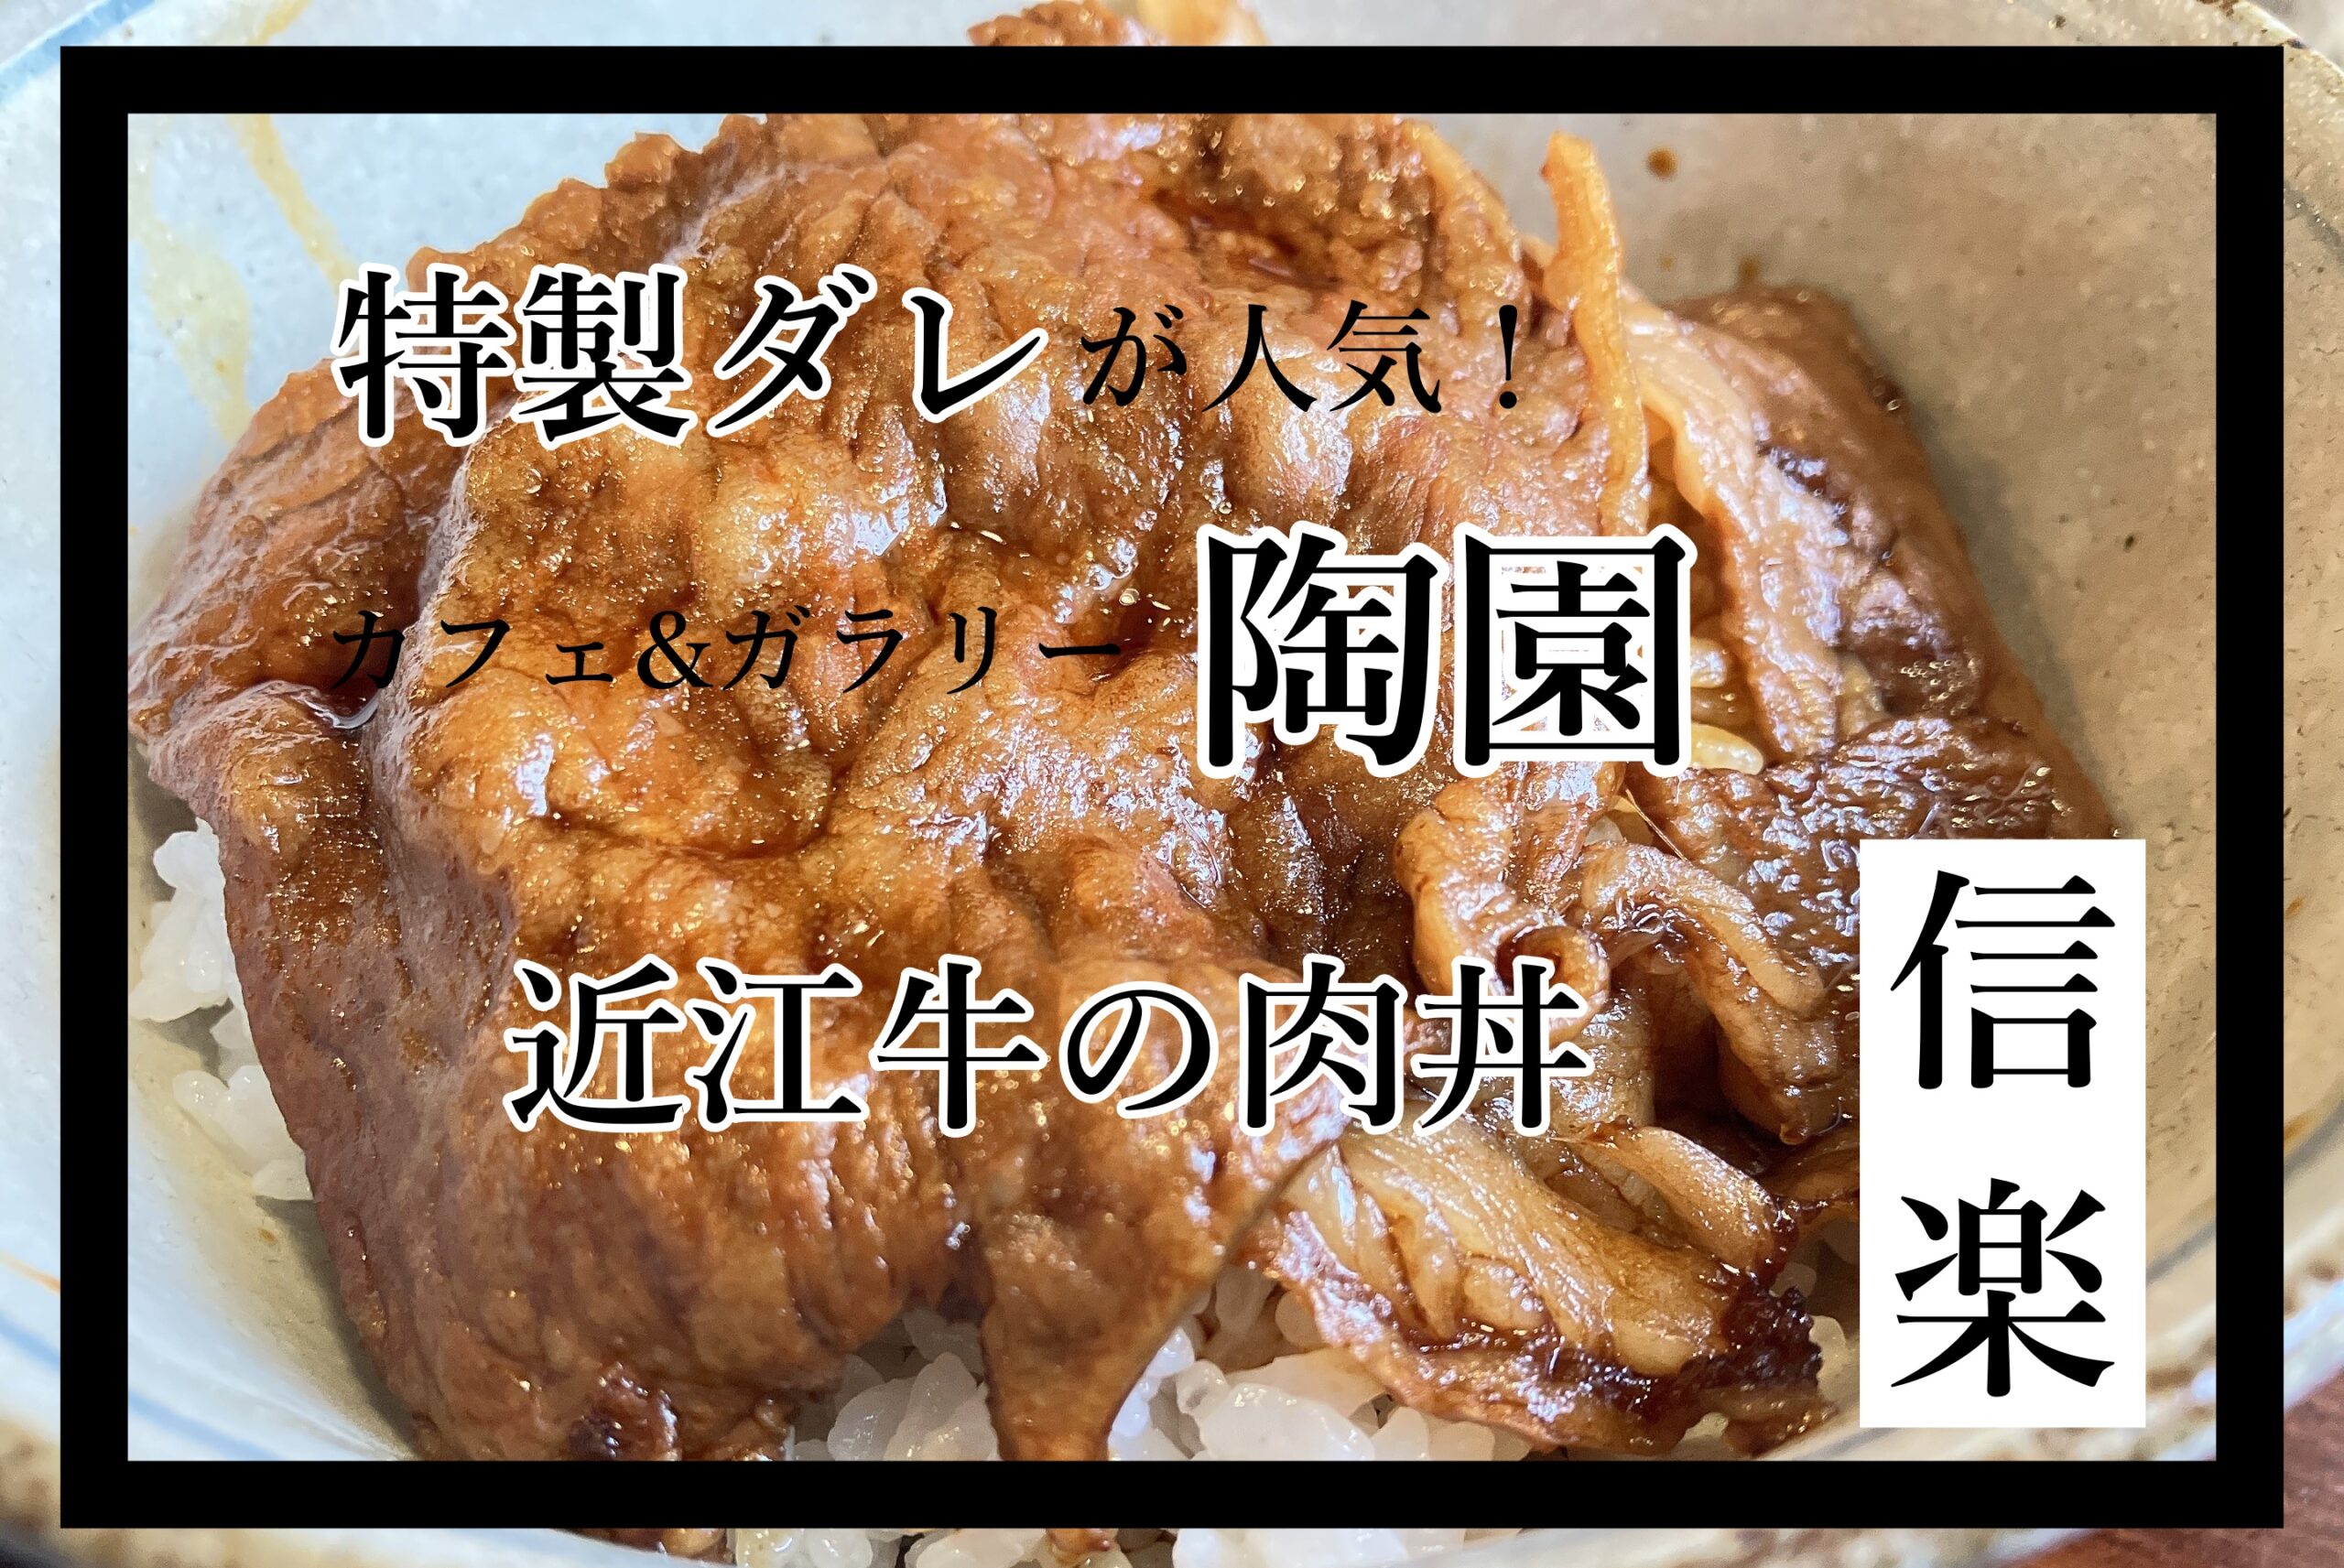 陶園 信楽ランチ 近江牛の肉丼 カフェ&ギャラリー